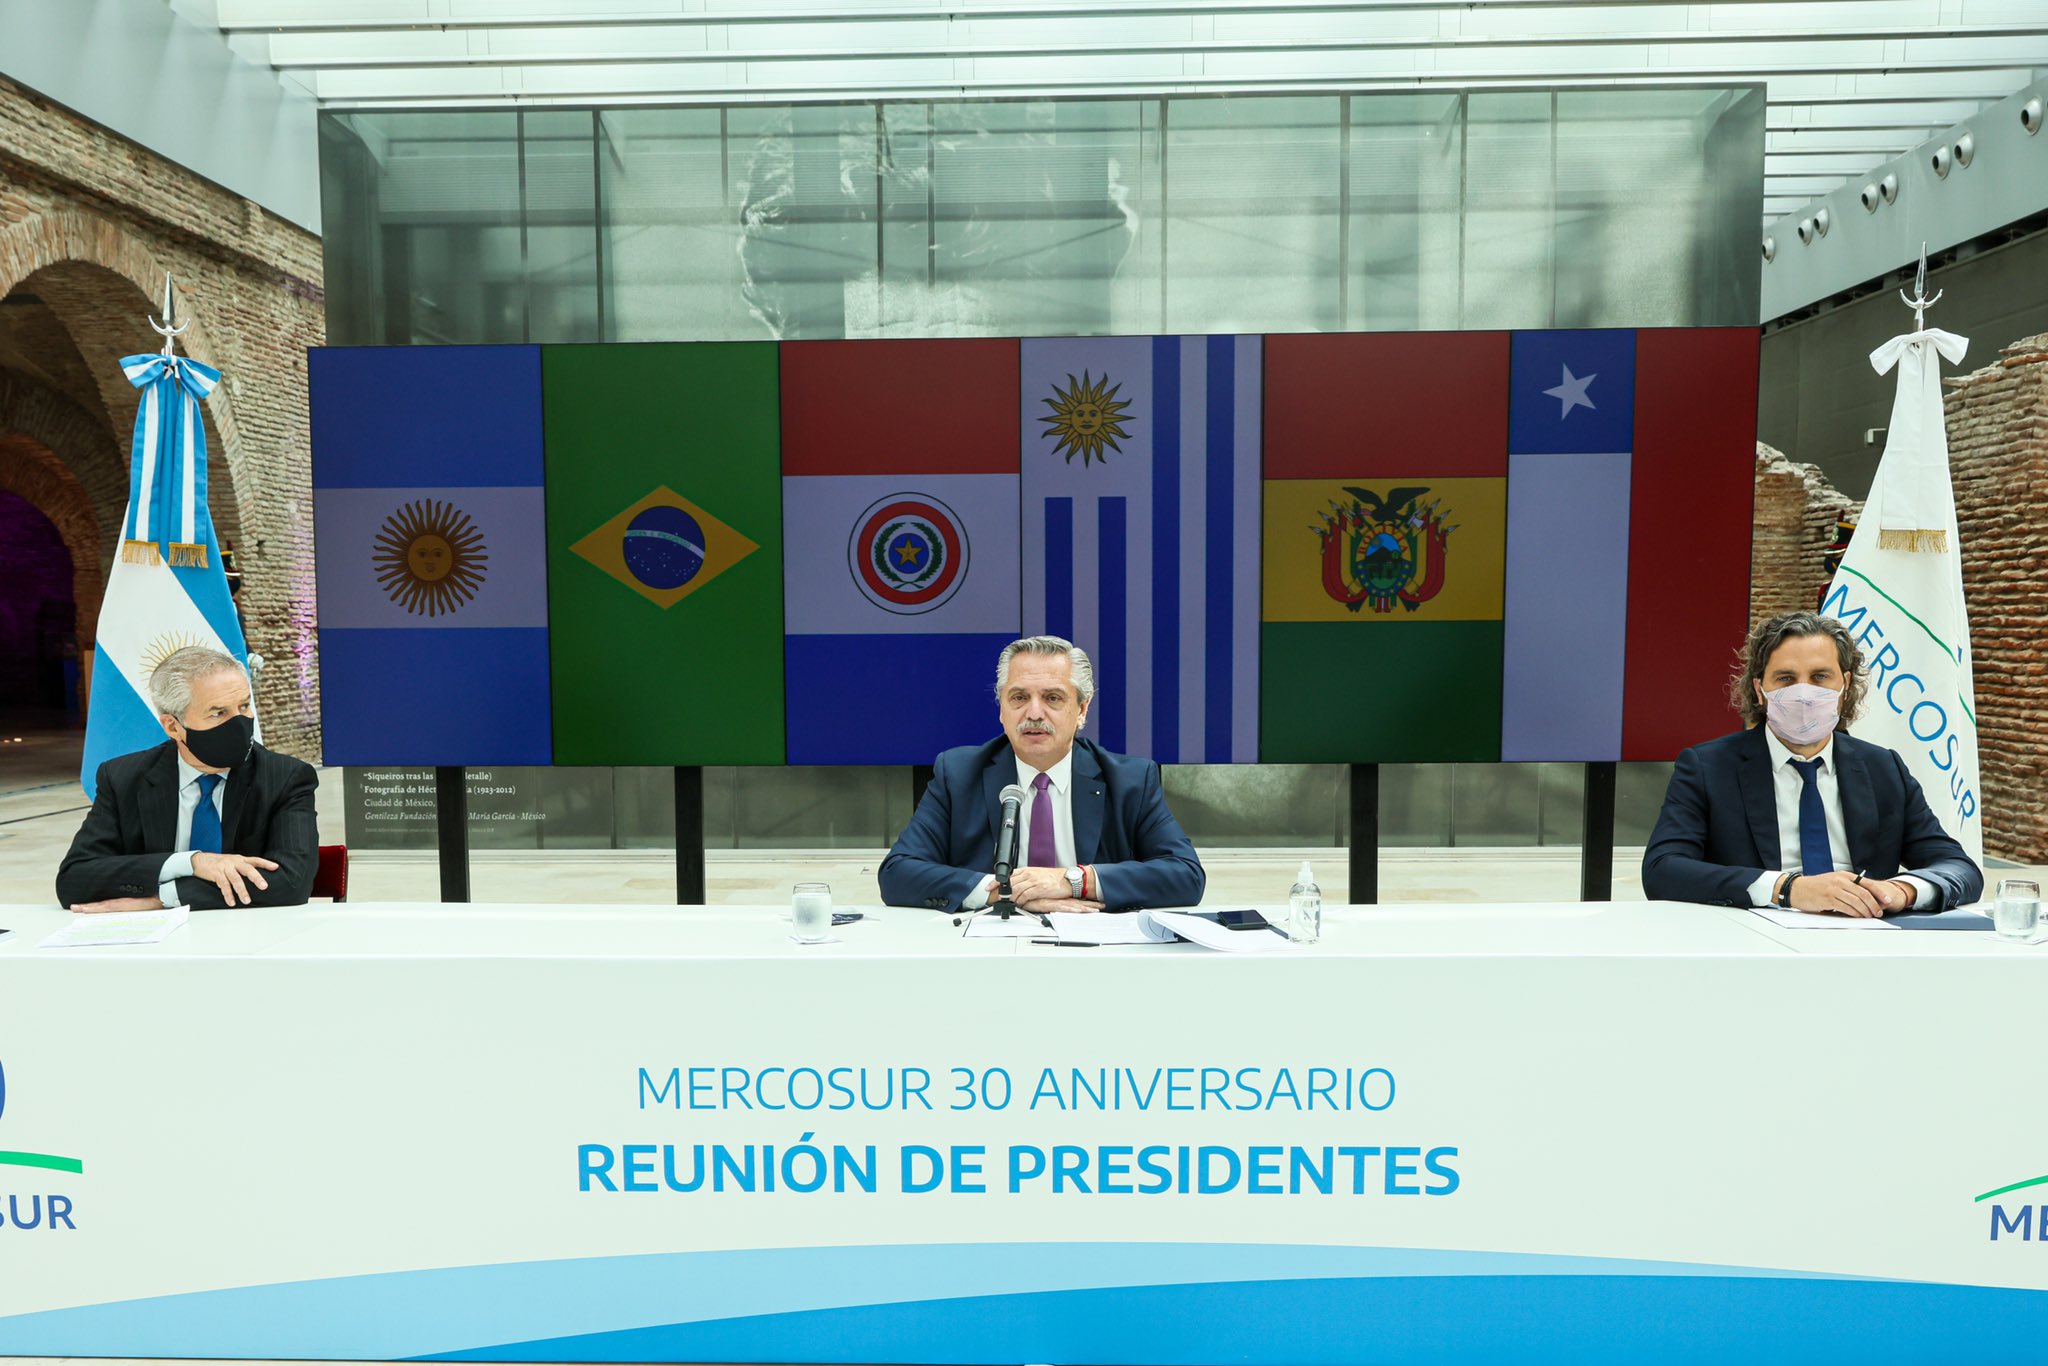 Alberto salió al cruce de los comentarios de Lacalle Pou en la reunión de presidentes del Mercosur. (Foto: @alferdez)